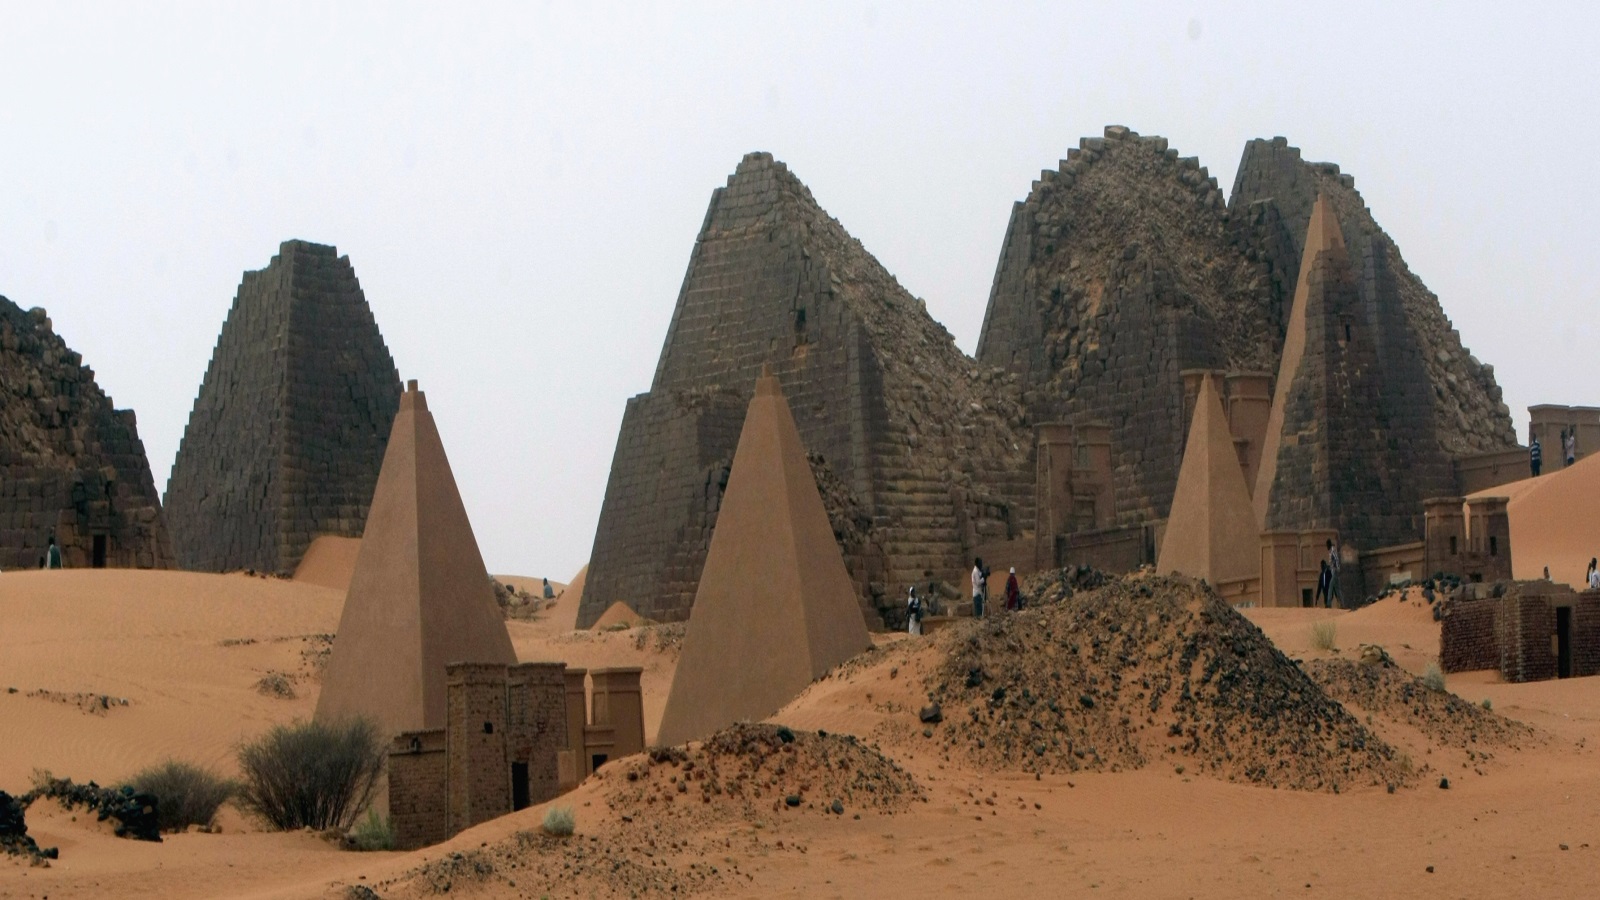 كثيرون لا يعرفون قدم وعظمة الحضارة السودانية القديمة في كوش رغم أنها حضارة تم ذكرها في مختلف الكتب الدينية والتاريخية منذ زمن الإغريق